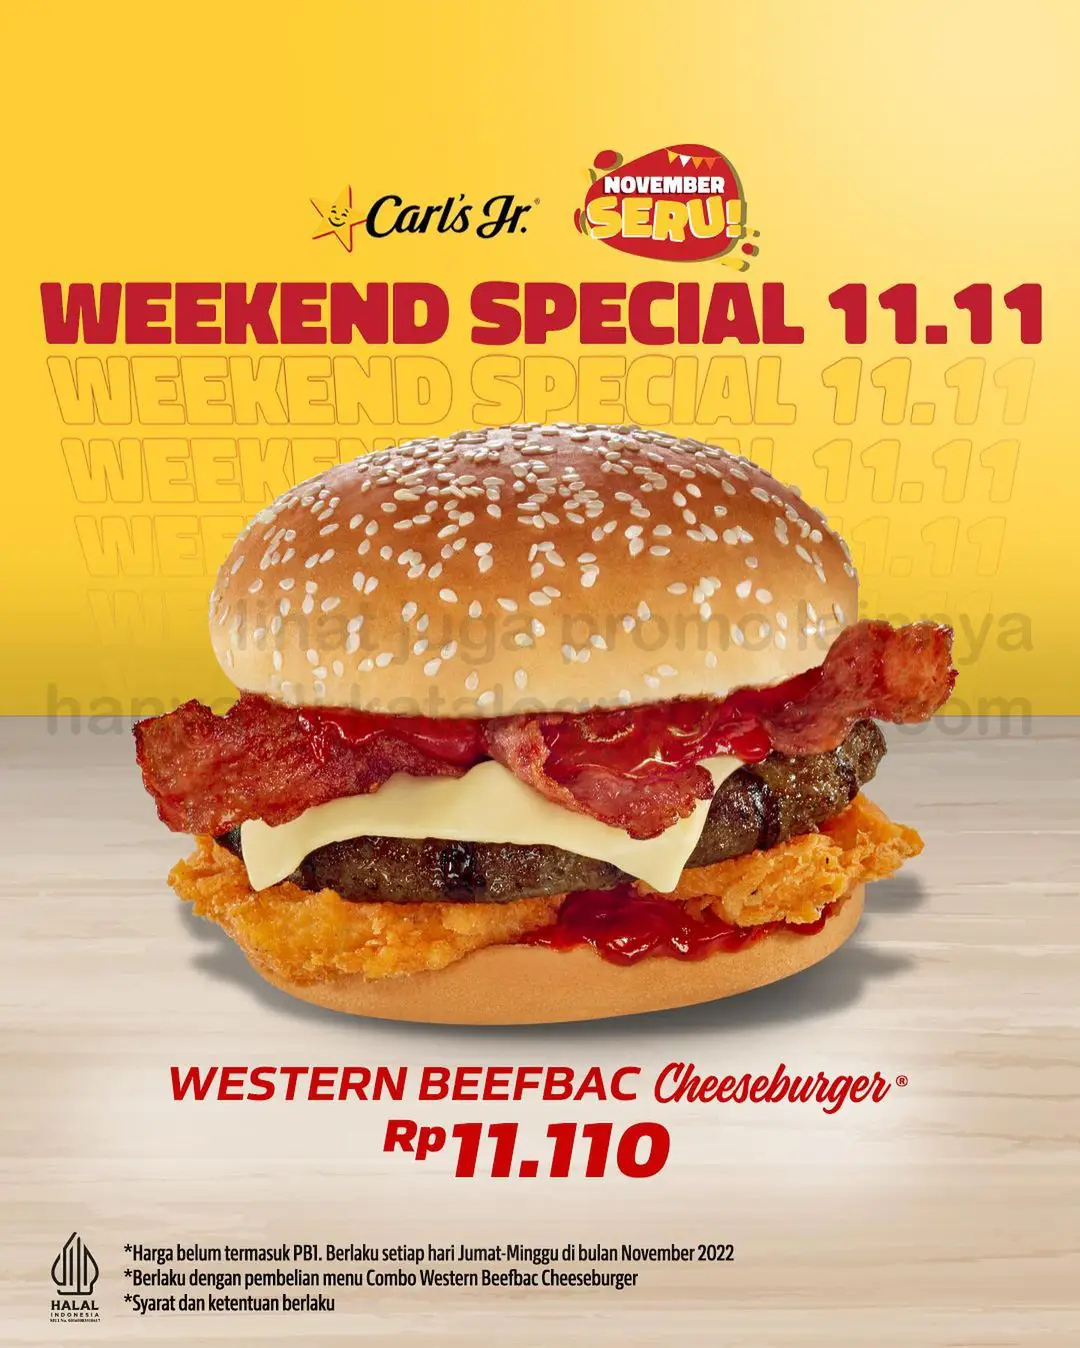 Promo CARLS JR 11.11 Weekend Special! Beli Western Beefbac Cheeseburger  HANYA Rp. 11.110